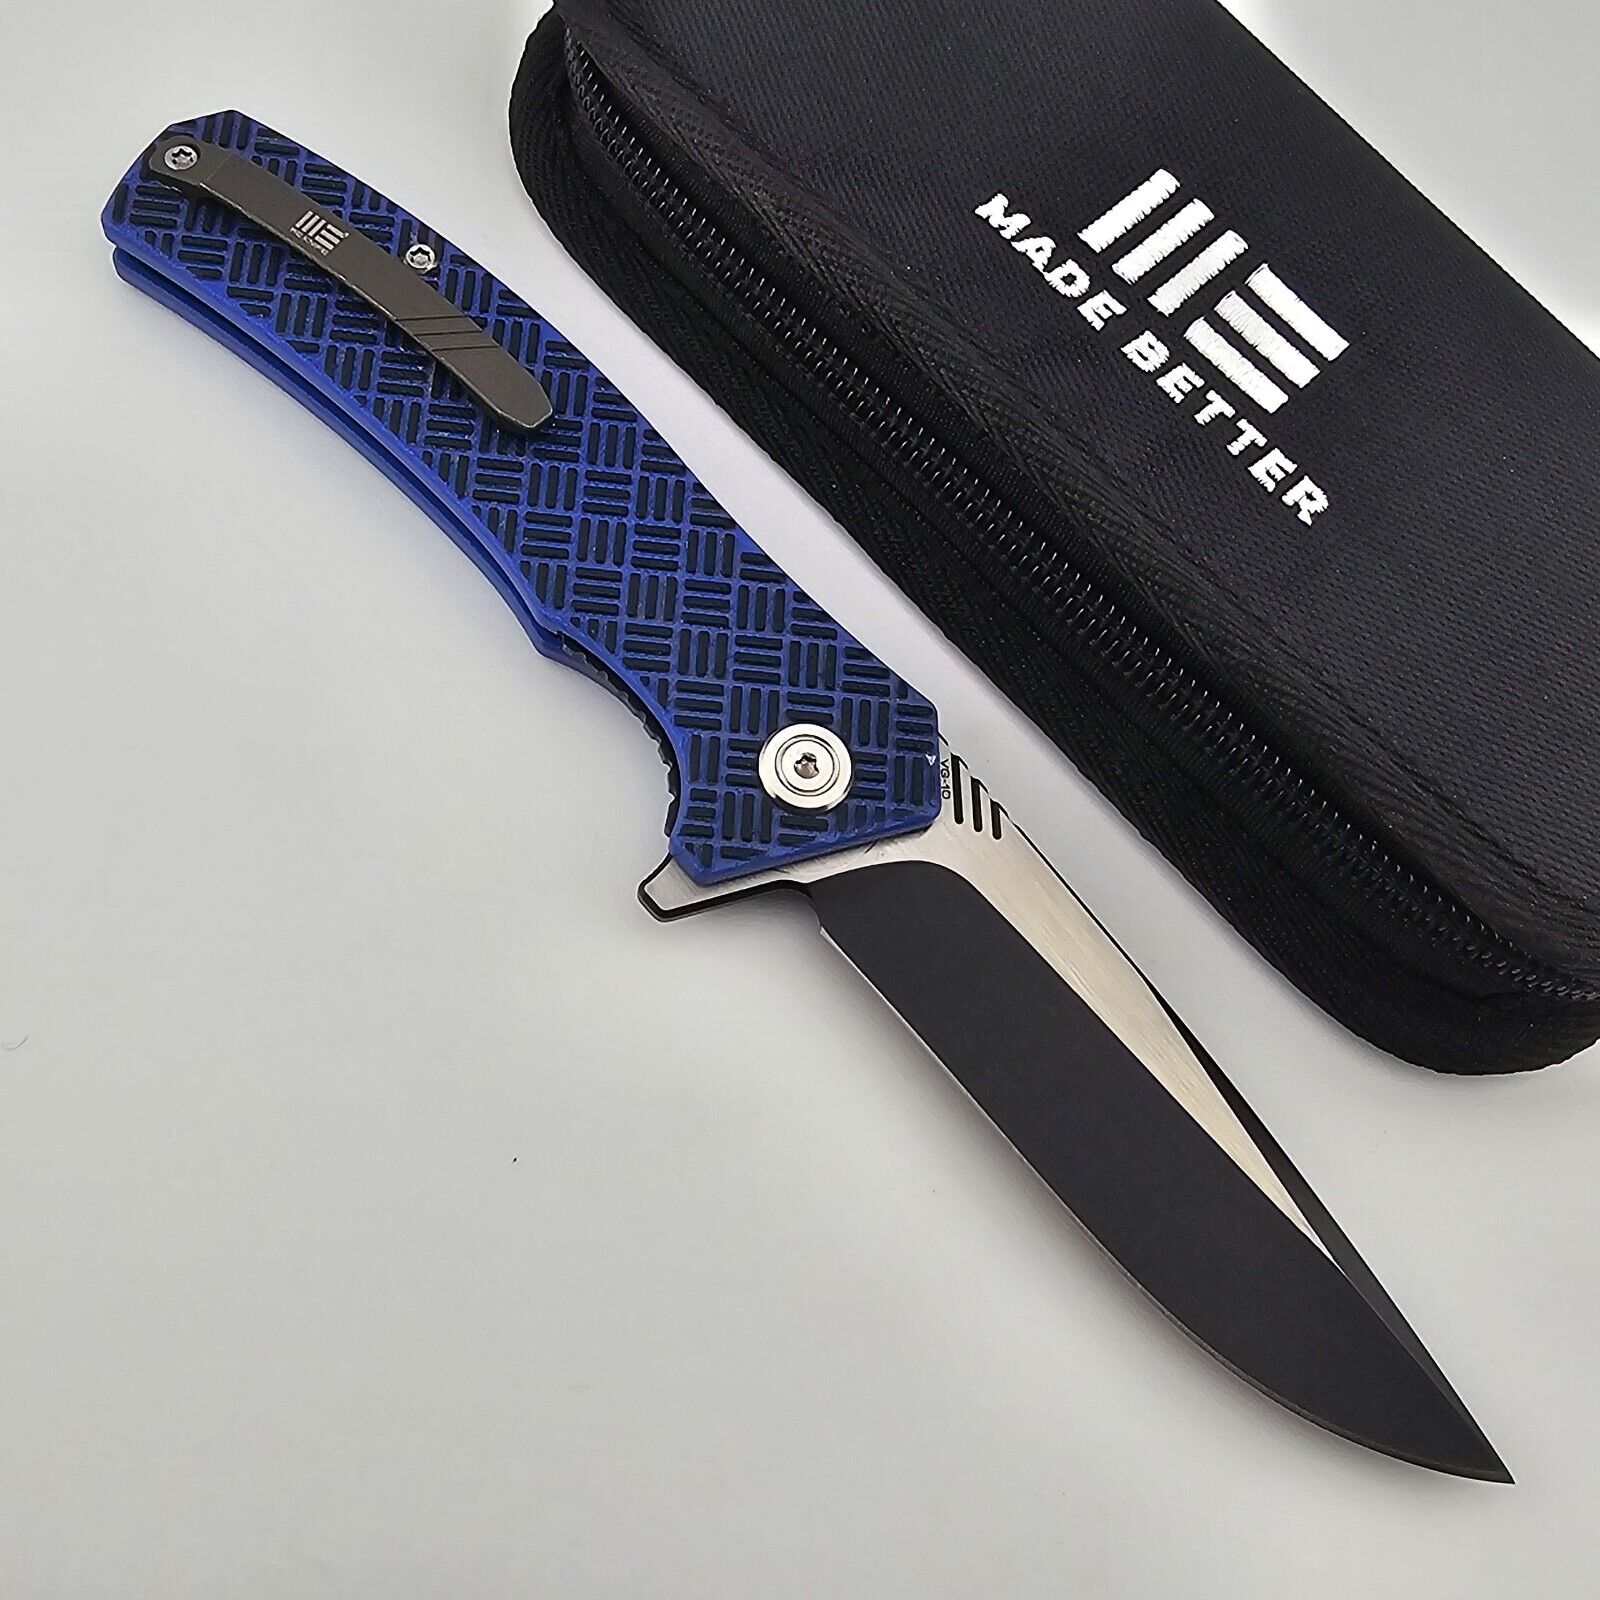 WE Knife Blitz Skreech Folding Knife Blue & Black G10 Handles VG10 Blade 711A